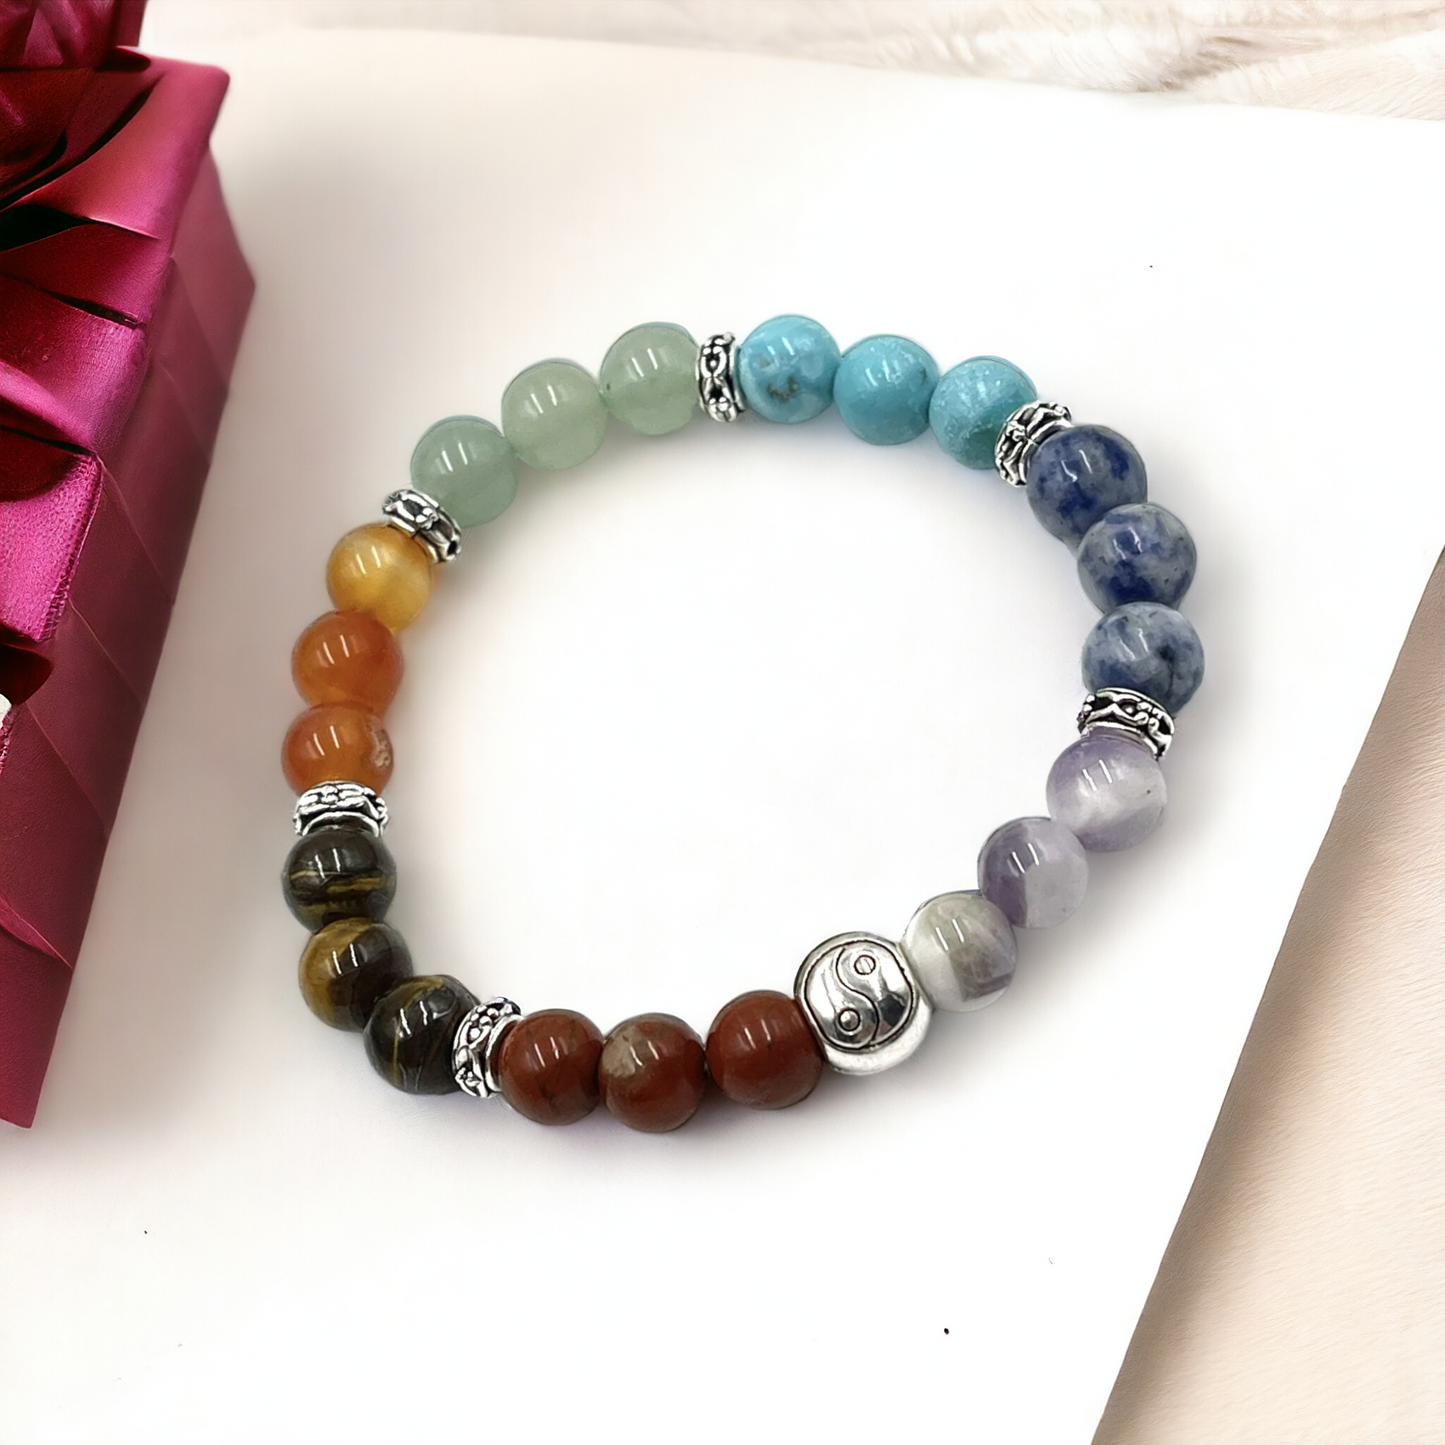 Chakra Stone Bracelet with Yin Yang Bead - includes Chakra Tumbled Stones